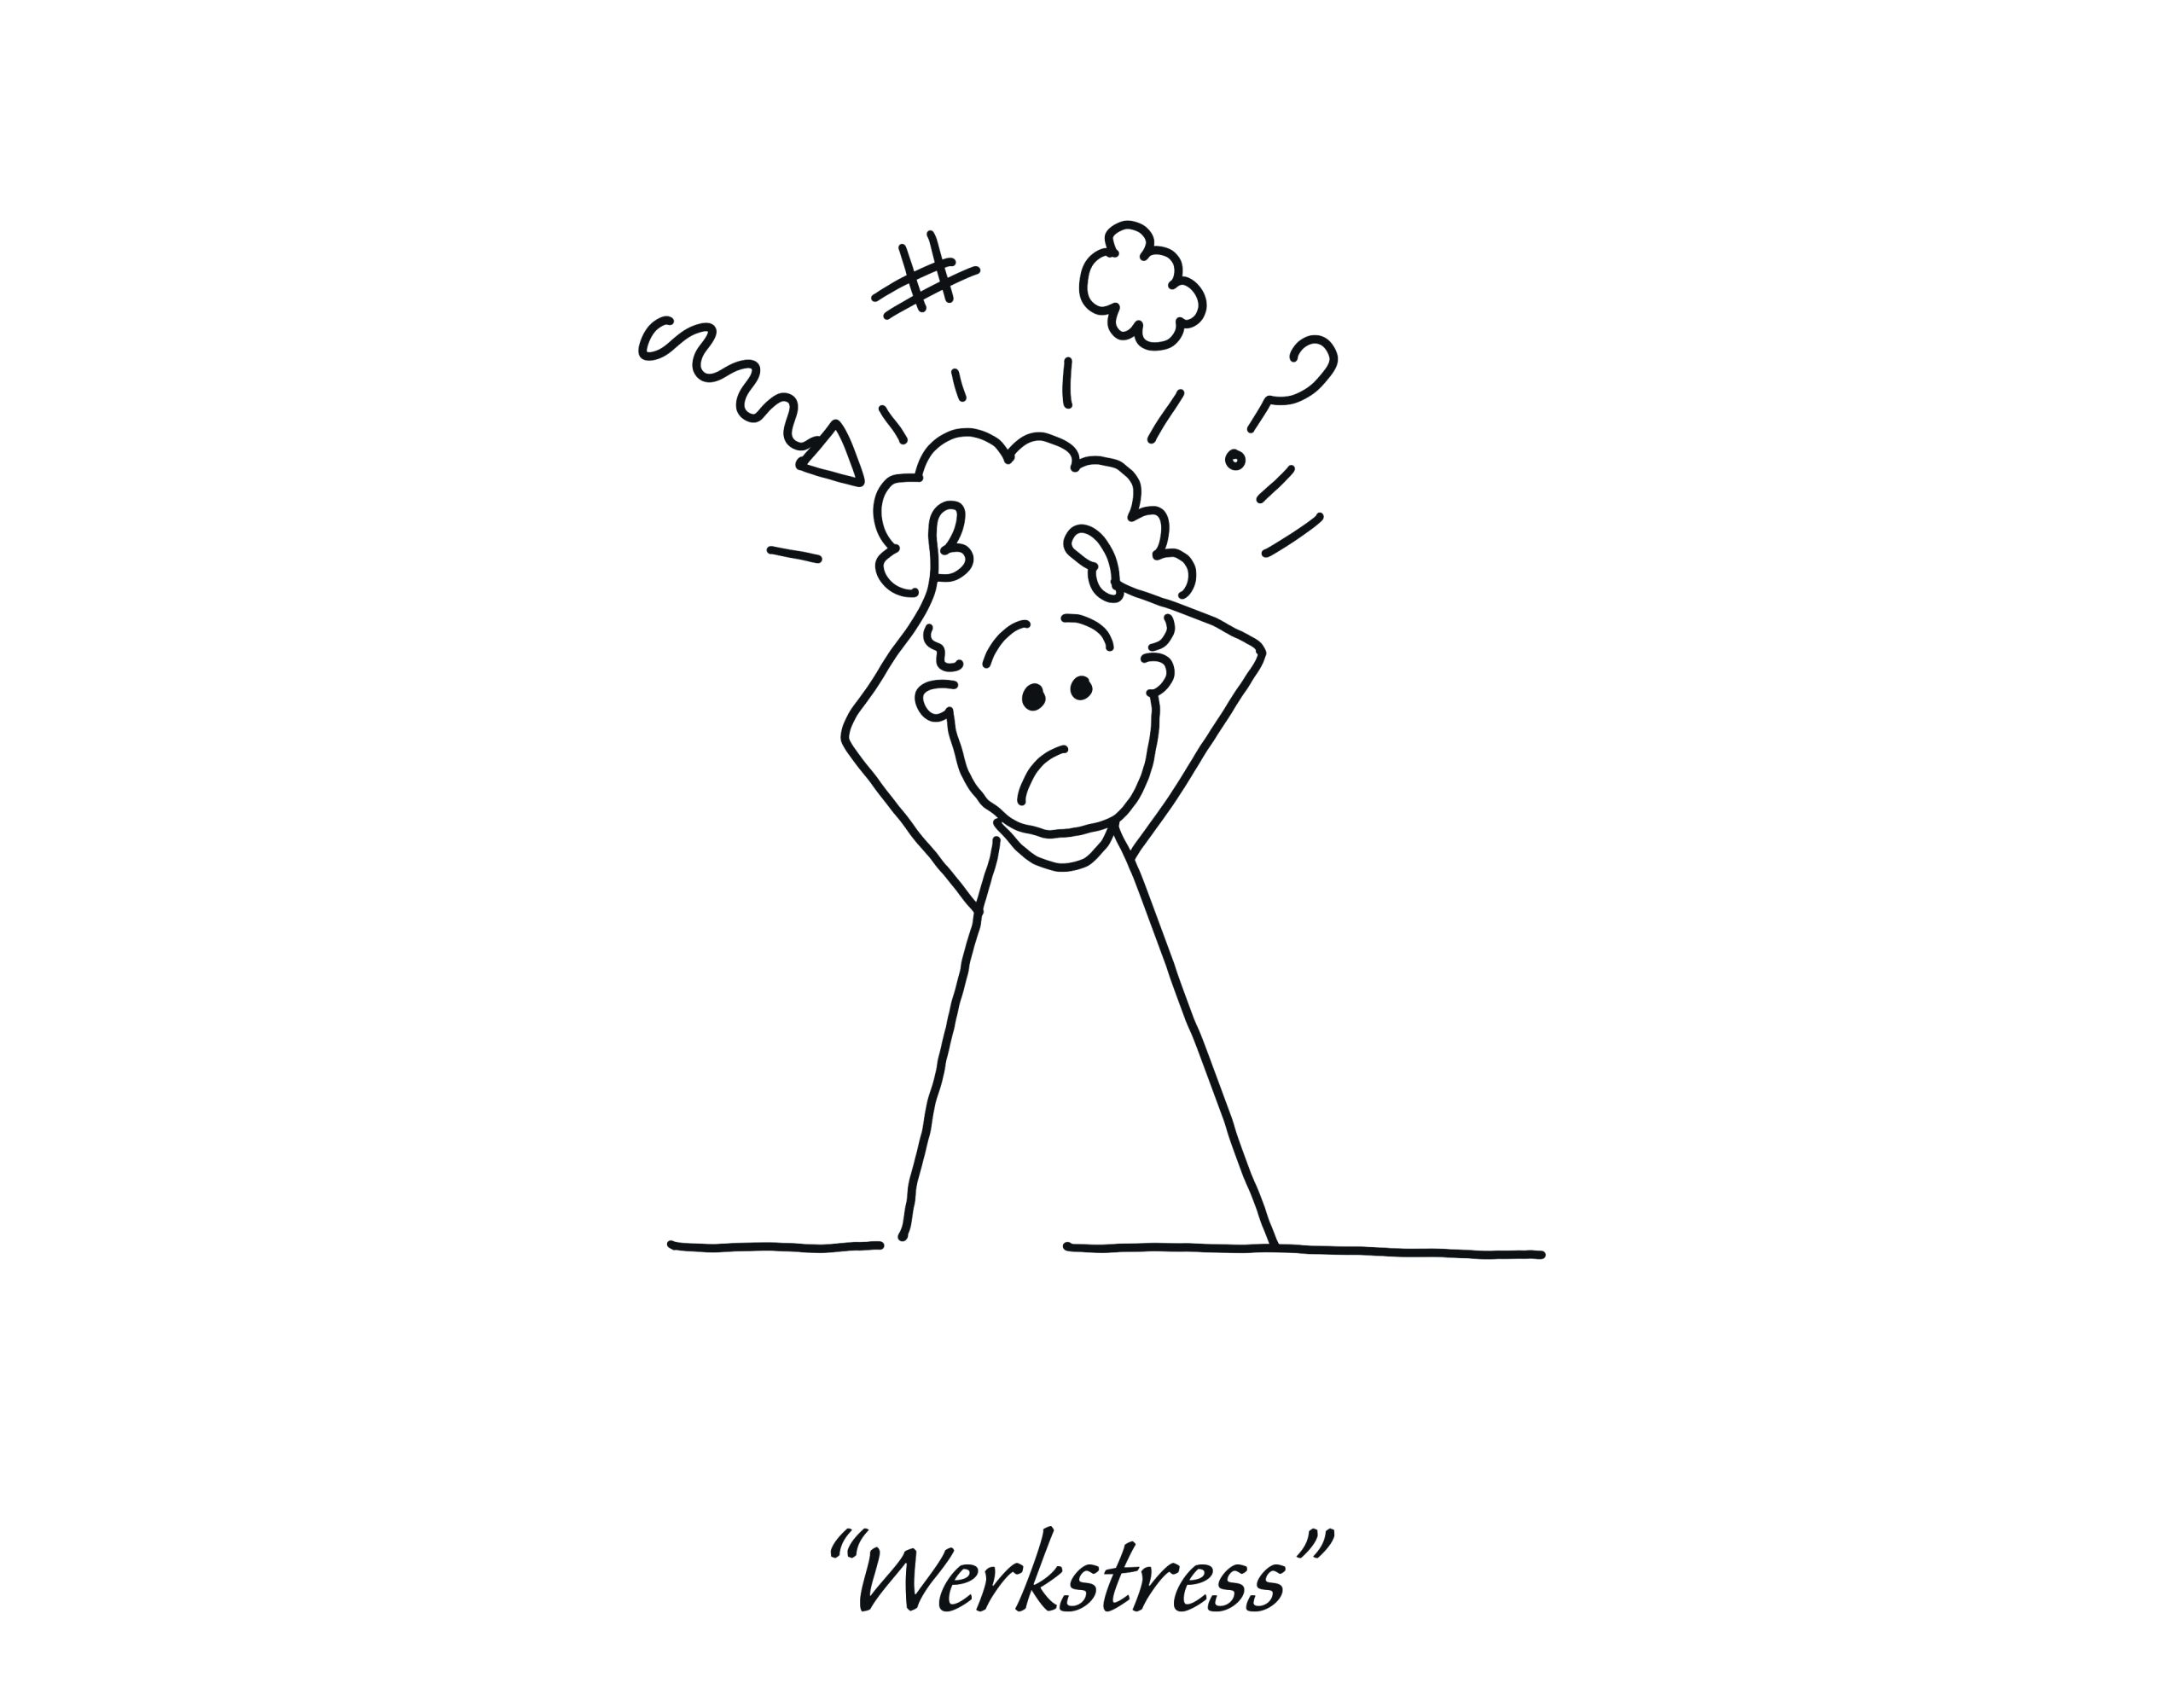 FLEX Gespreks Kaartjes - Afbeelding van een harkpoppetje die last heeft van werkstress.